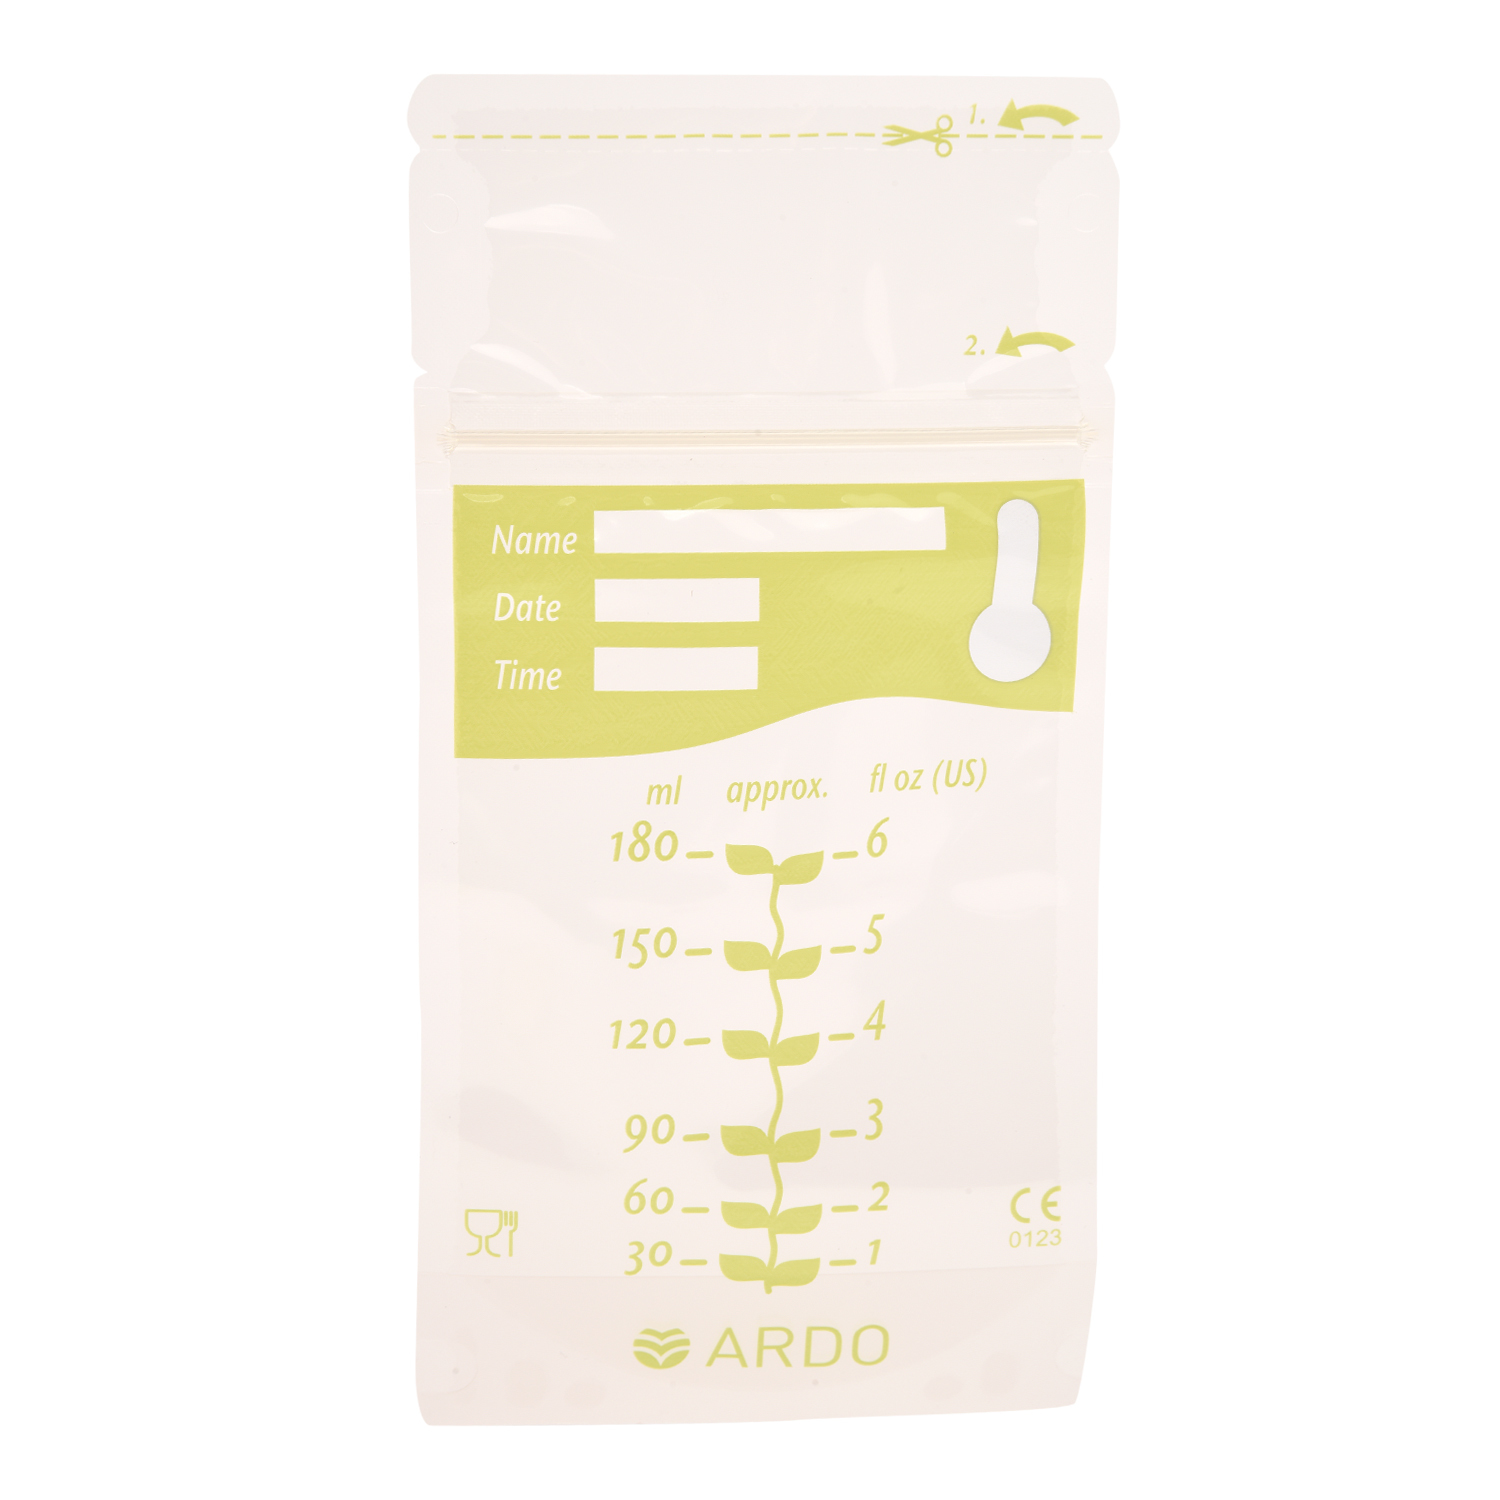 Пакеты для грудного молока ARDO EASY FREEZE - фото 3